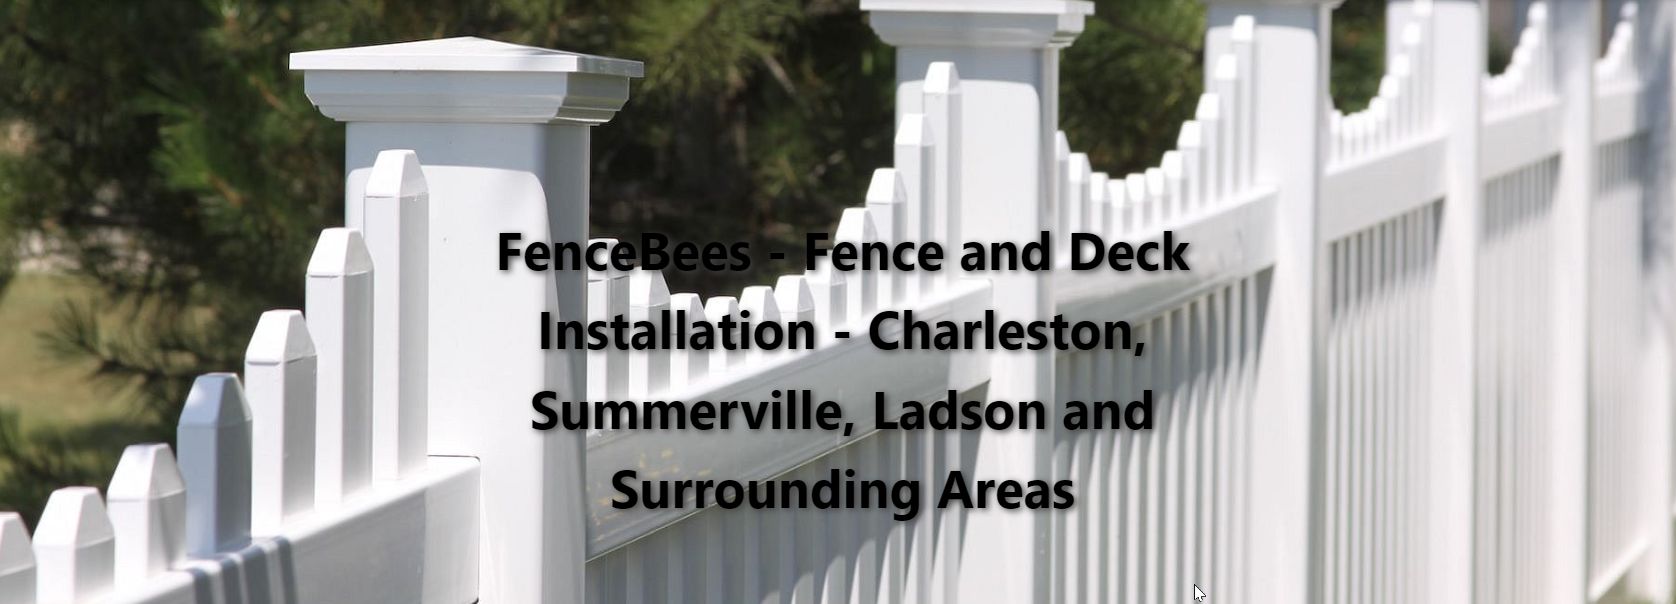 FenceBees Fence Installation Deck Installation Charleston Ladson Summerville